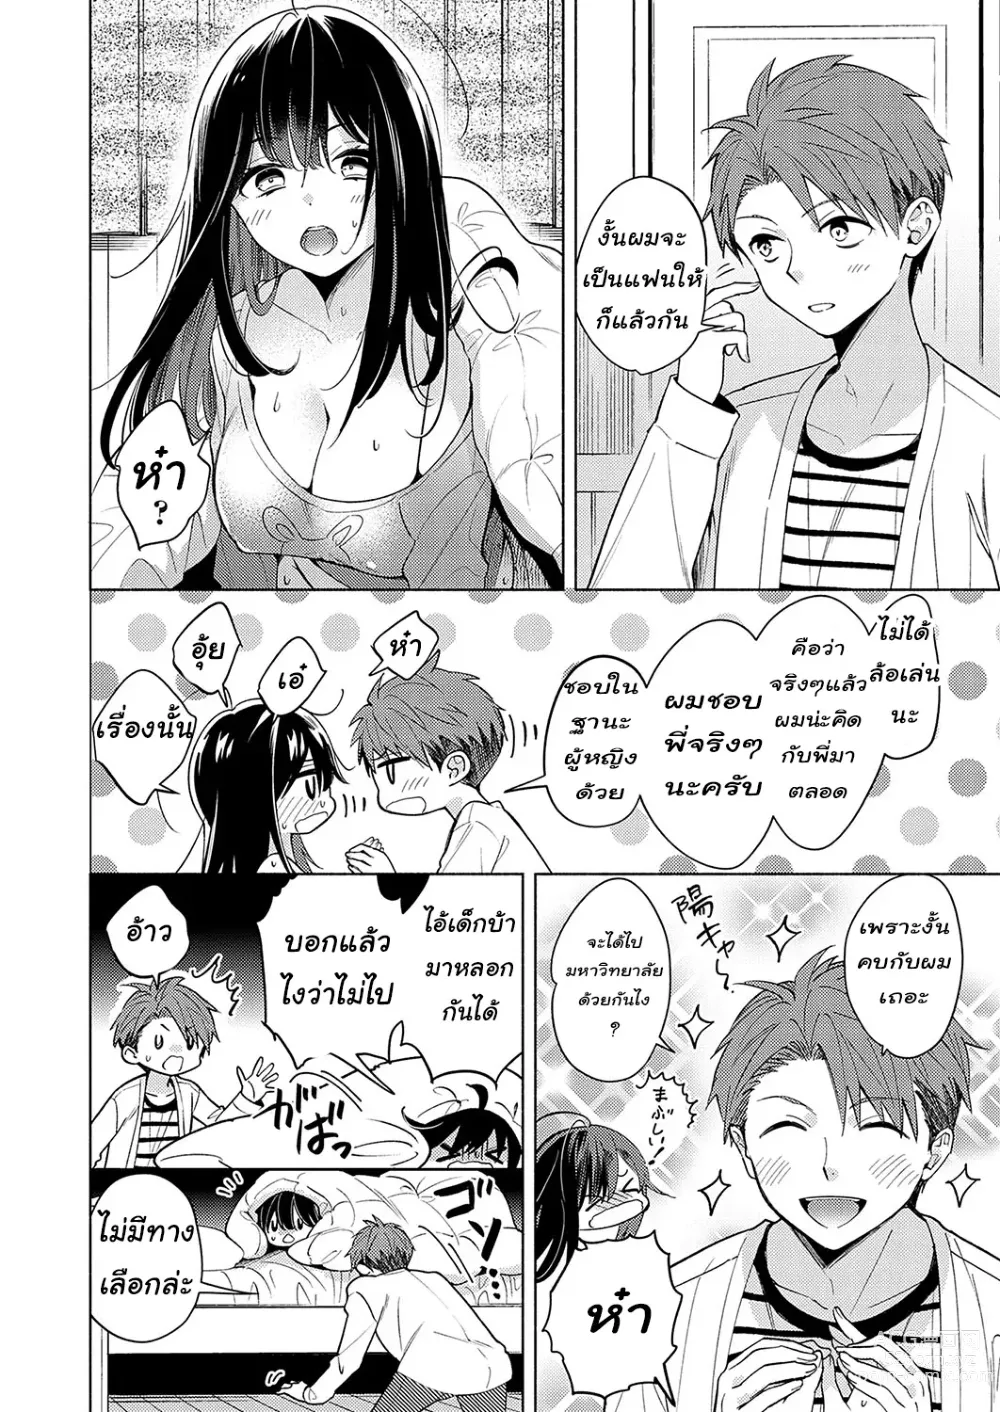 Page 4 of manga Neechan ga doukyusei ni naru made 30-nichi - onani chudoku ane no hiki komori dasshutsu keikaku